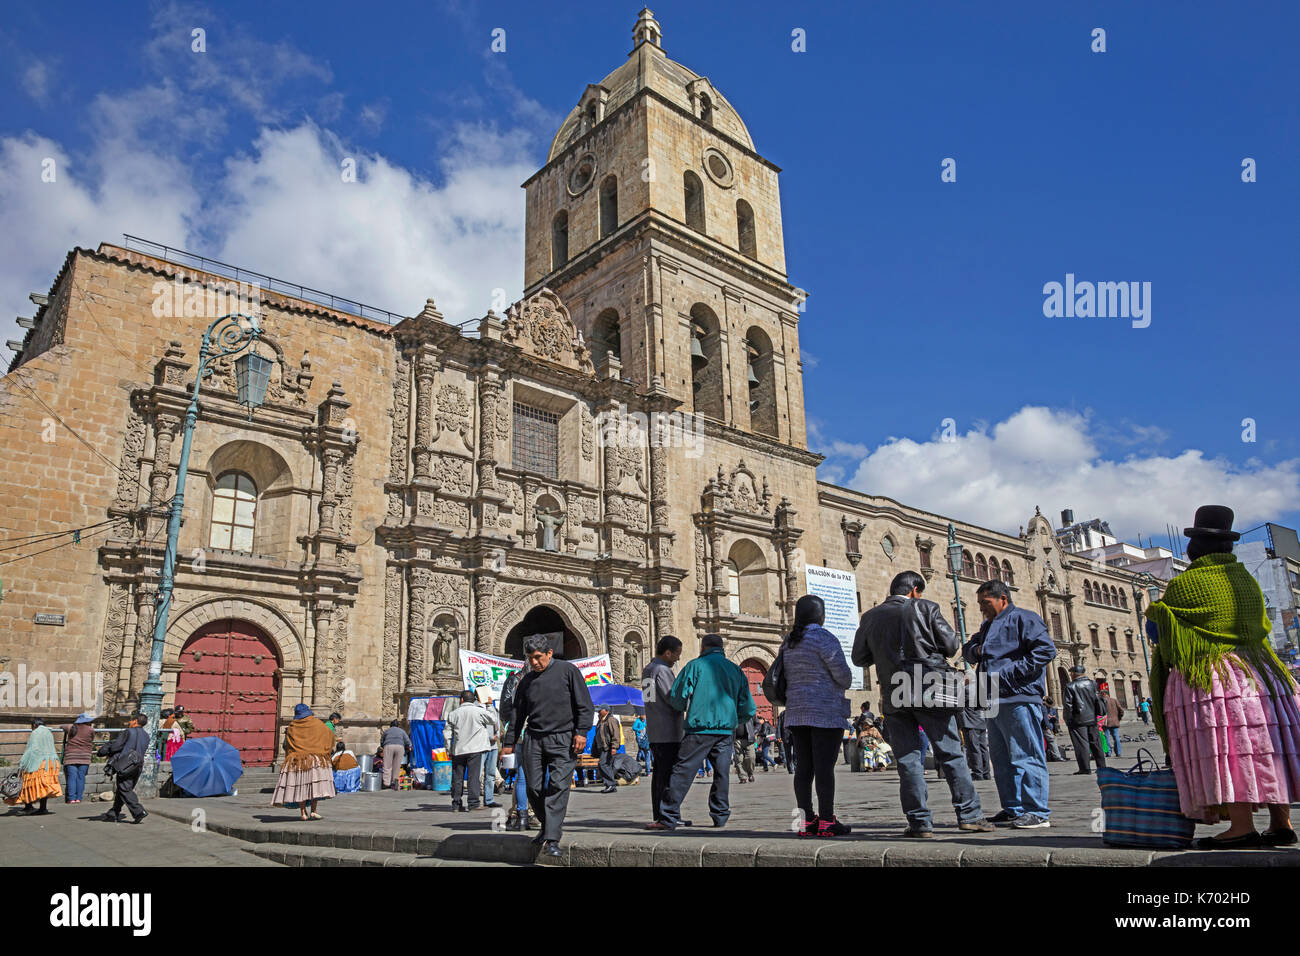 La Iglesia san francisco / la chiesa di san francisco / basilica di san francisco in stile barocco stile mestizo, plaza san francisco nella città di La Paz, Bolivia Foto Stock